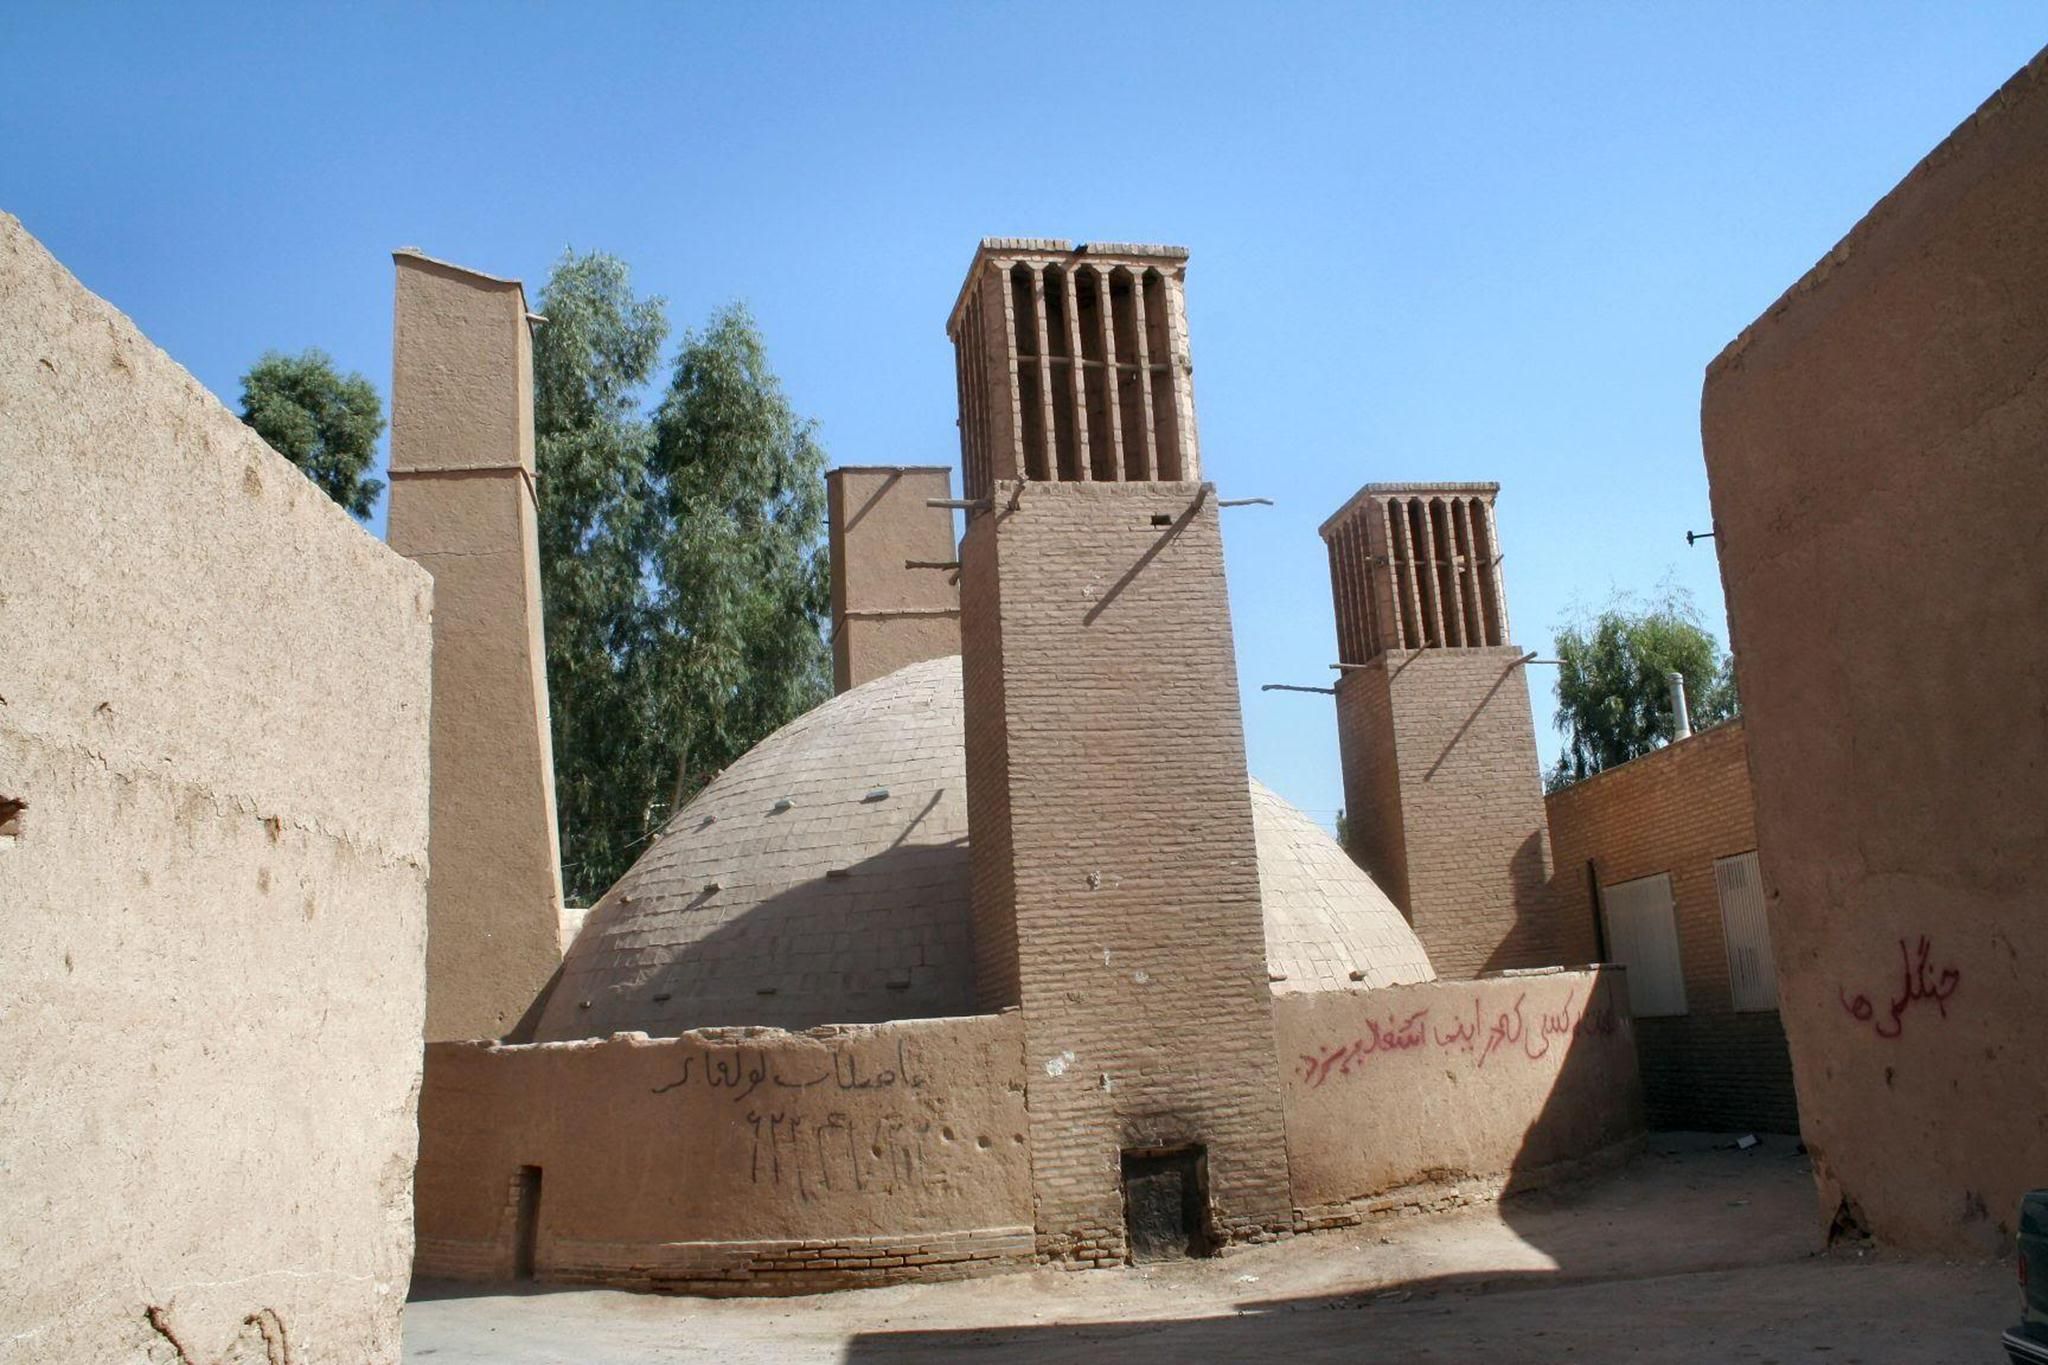 Hình 10: MÁI VÒM VÀ THÁP GIÓ của bình chứa ở Yazd có ở đây. Tháp cao khoảng 12m, bình chứa sâu khoảng 12m và có thể chứa khoảng 1,000 mét khối nước. Nguồn: Flickr.com 